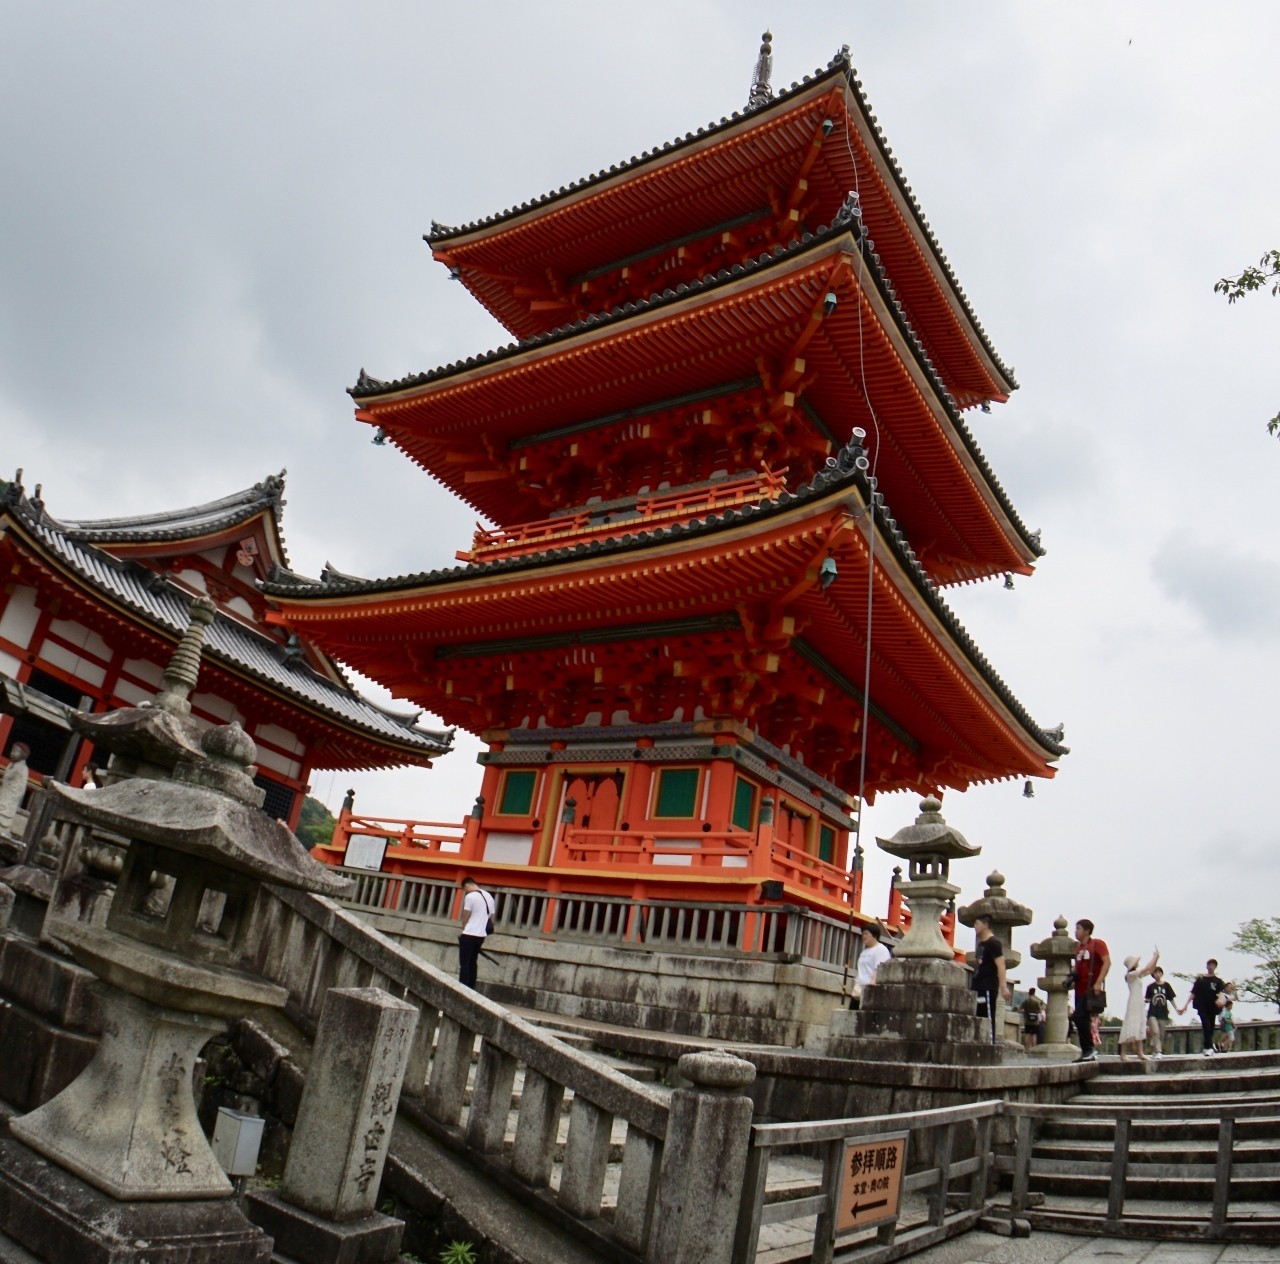 【清水の舞台を目指してみる】

写真の「清水寺の三重塔」は、実は、約1000年前847年に建立、その後、今から約400年の1632年に再建されたもの。
